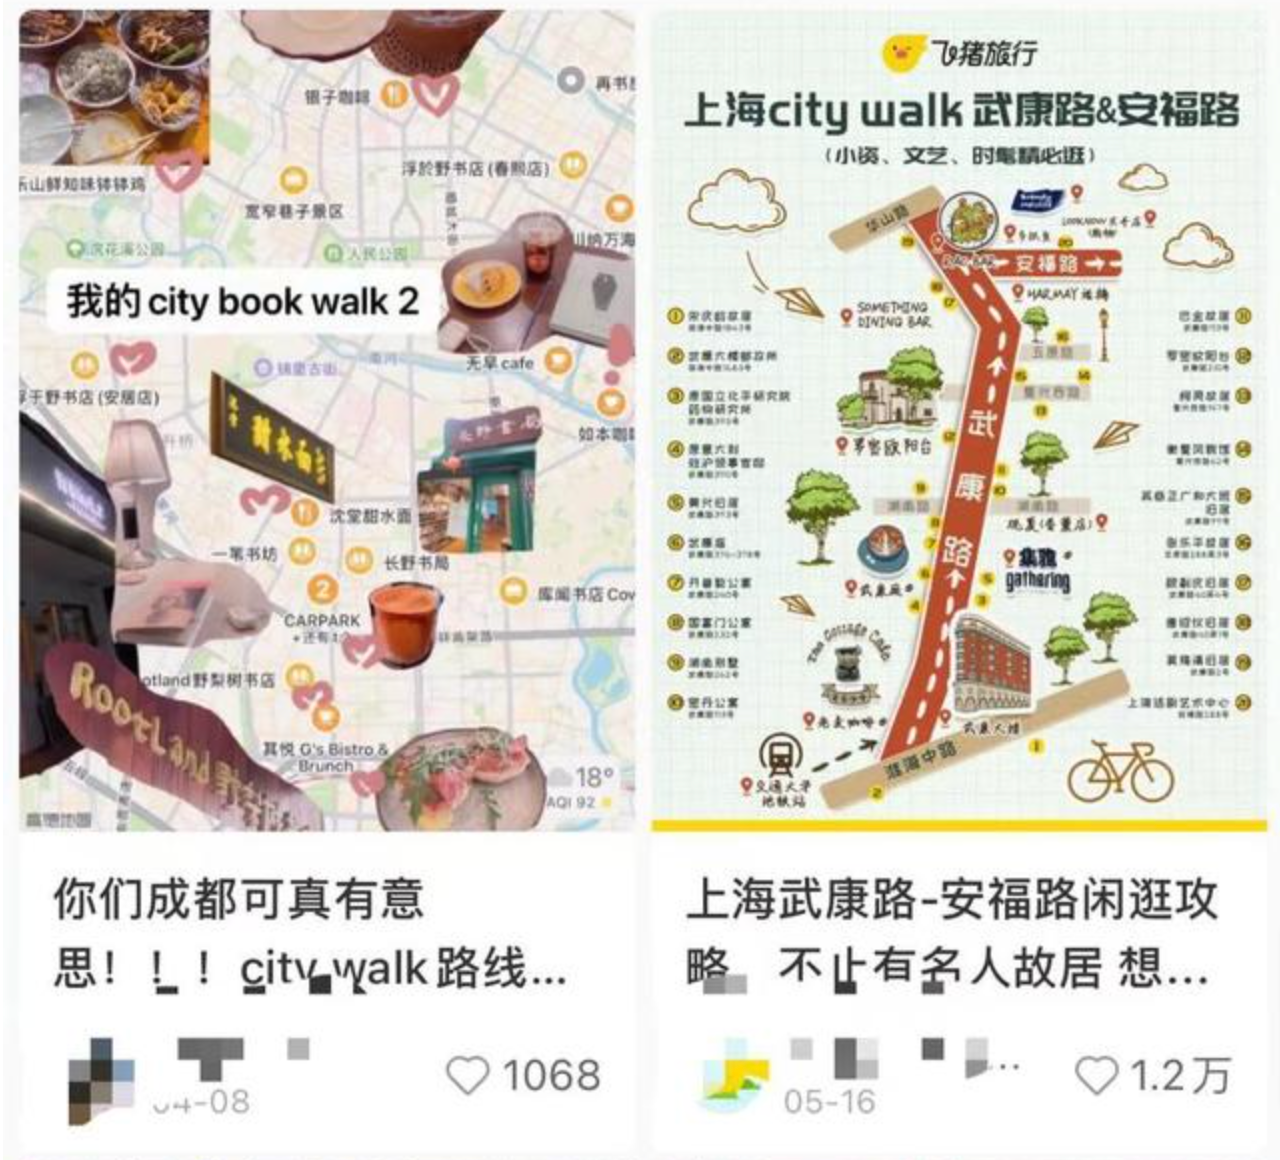 도시를 걷는 여행법, 시티워크 트렌드가 의미하는 것 – 중국 MZ의 현실